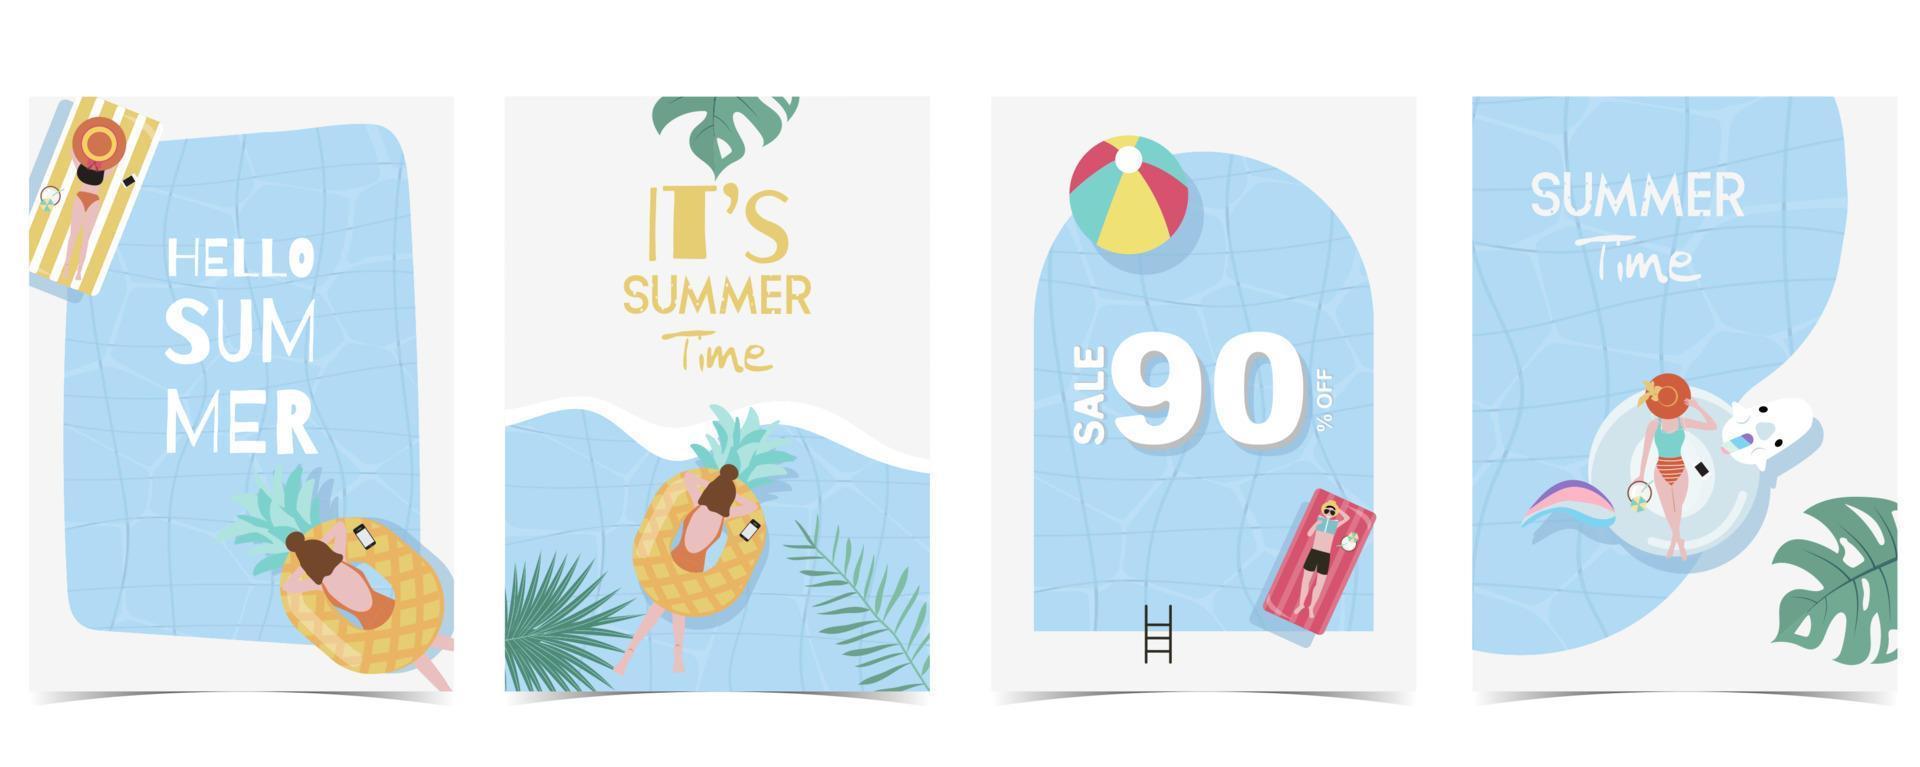 feest zomertijd ansichtkaart met zwembad en strand op de achtergrond overdag vector